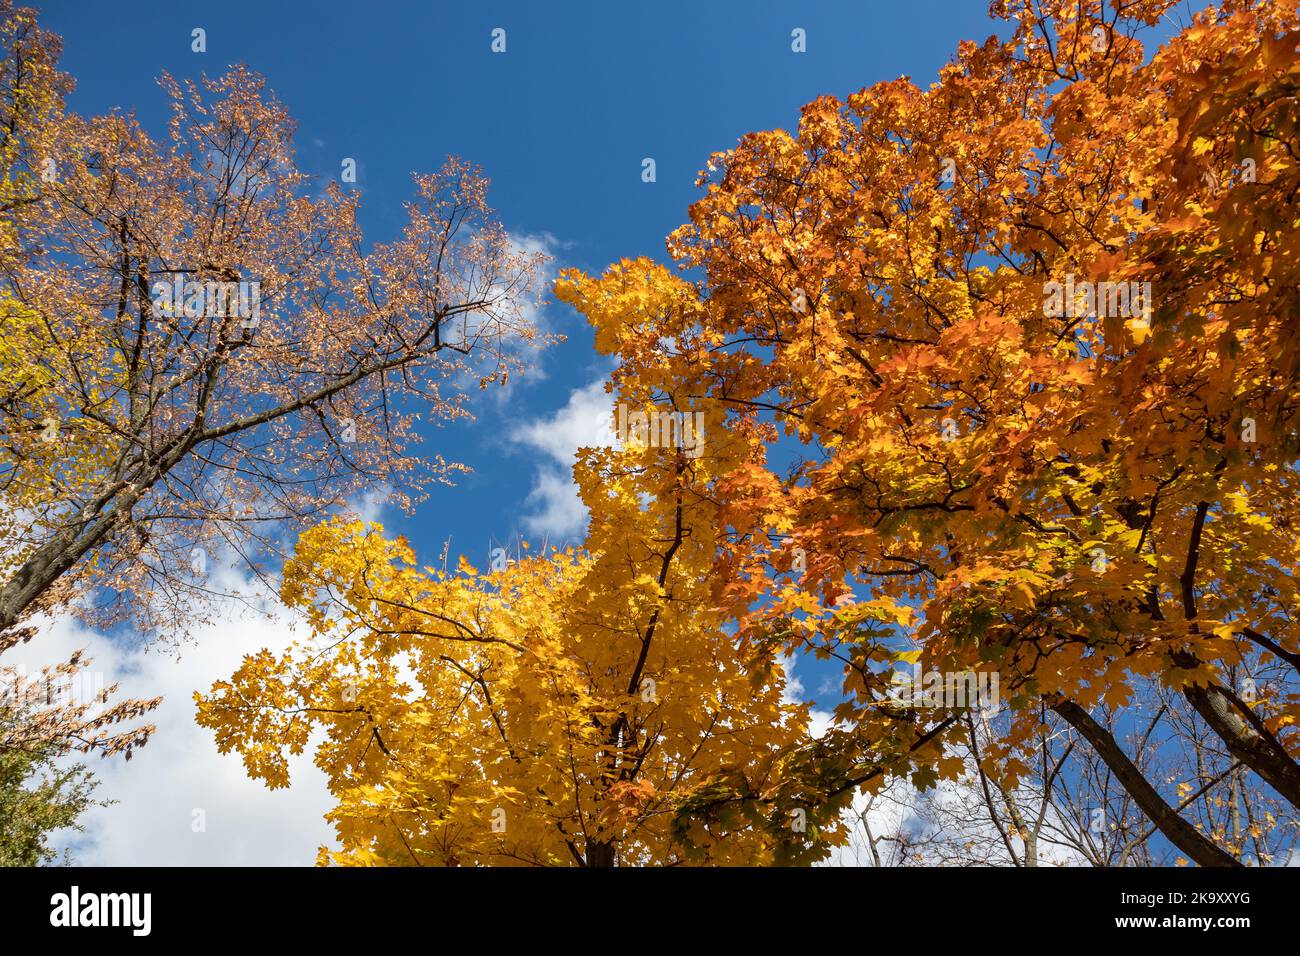 Regard sur la saison dorée de l'automne. Branches d'érable avec des feuilles jaunes colorées sur le ciel bleu avec des nuages, fond naturel automnal de forêt Banque D'Images